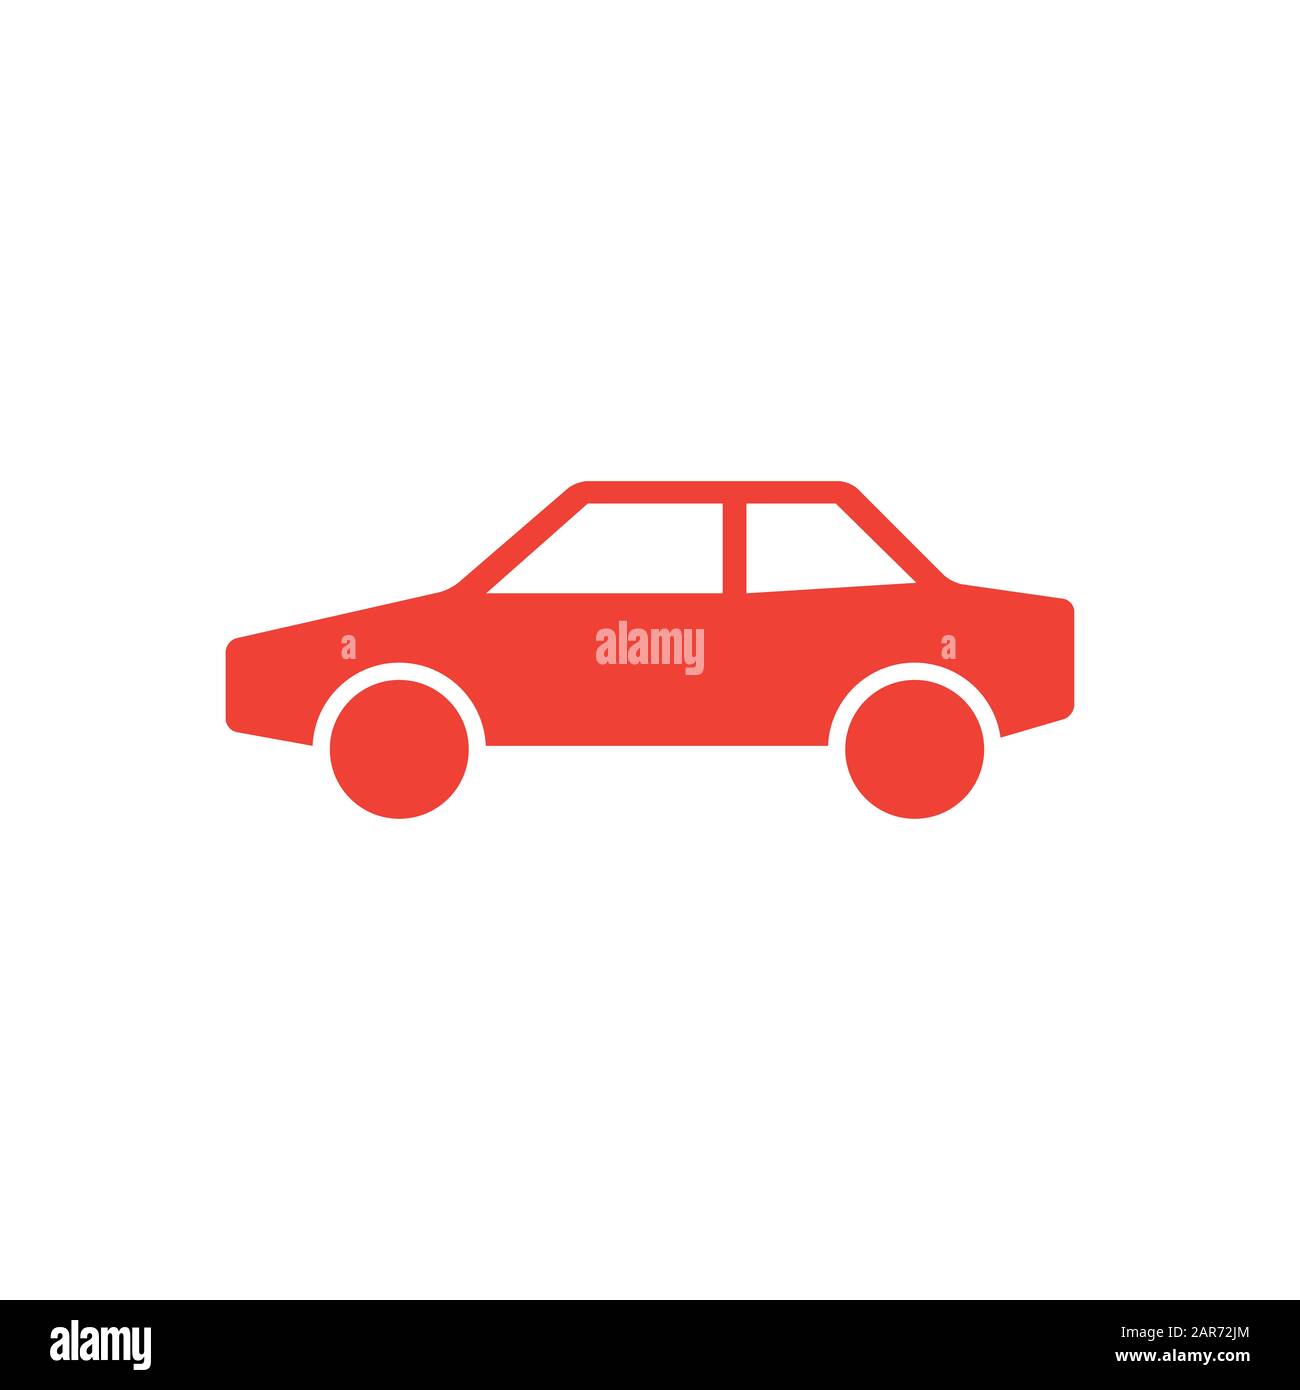 Auto Rot Symbol Auf Weißem Hintergrund. Rote Vektor-Grafik Mit Flacher Form  Stockfotografie - Alamy